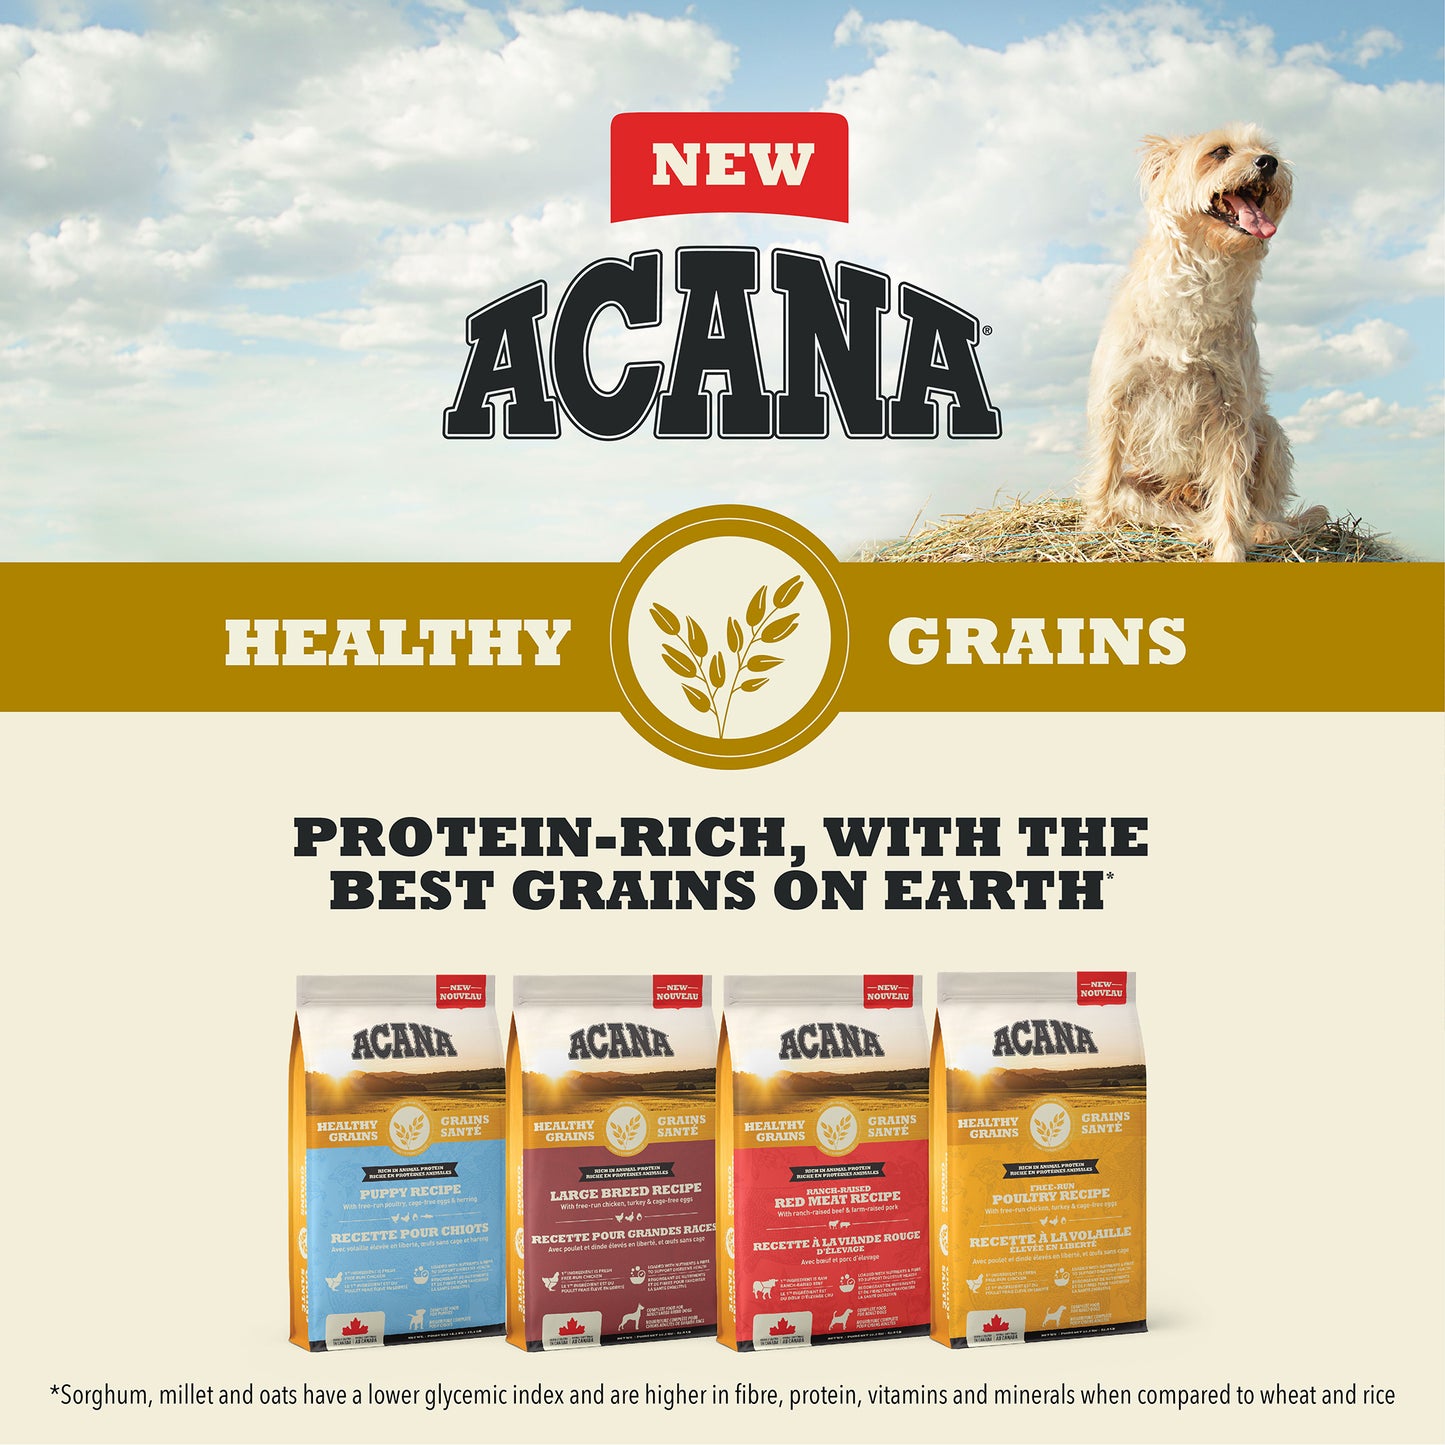 ACANA® HEALTHY GRAINS Puppy Recipe